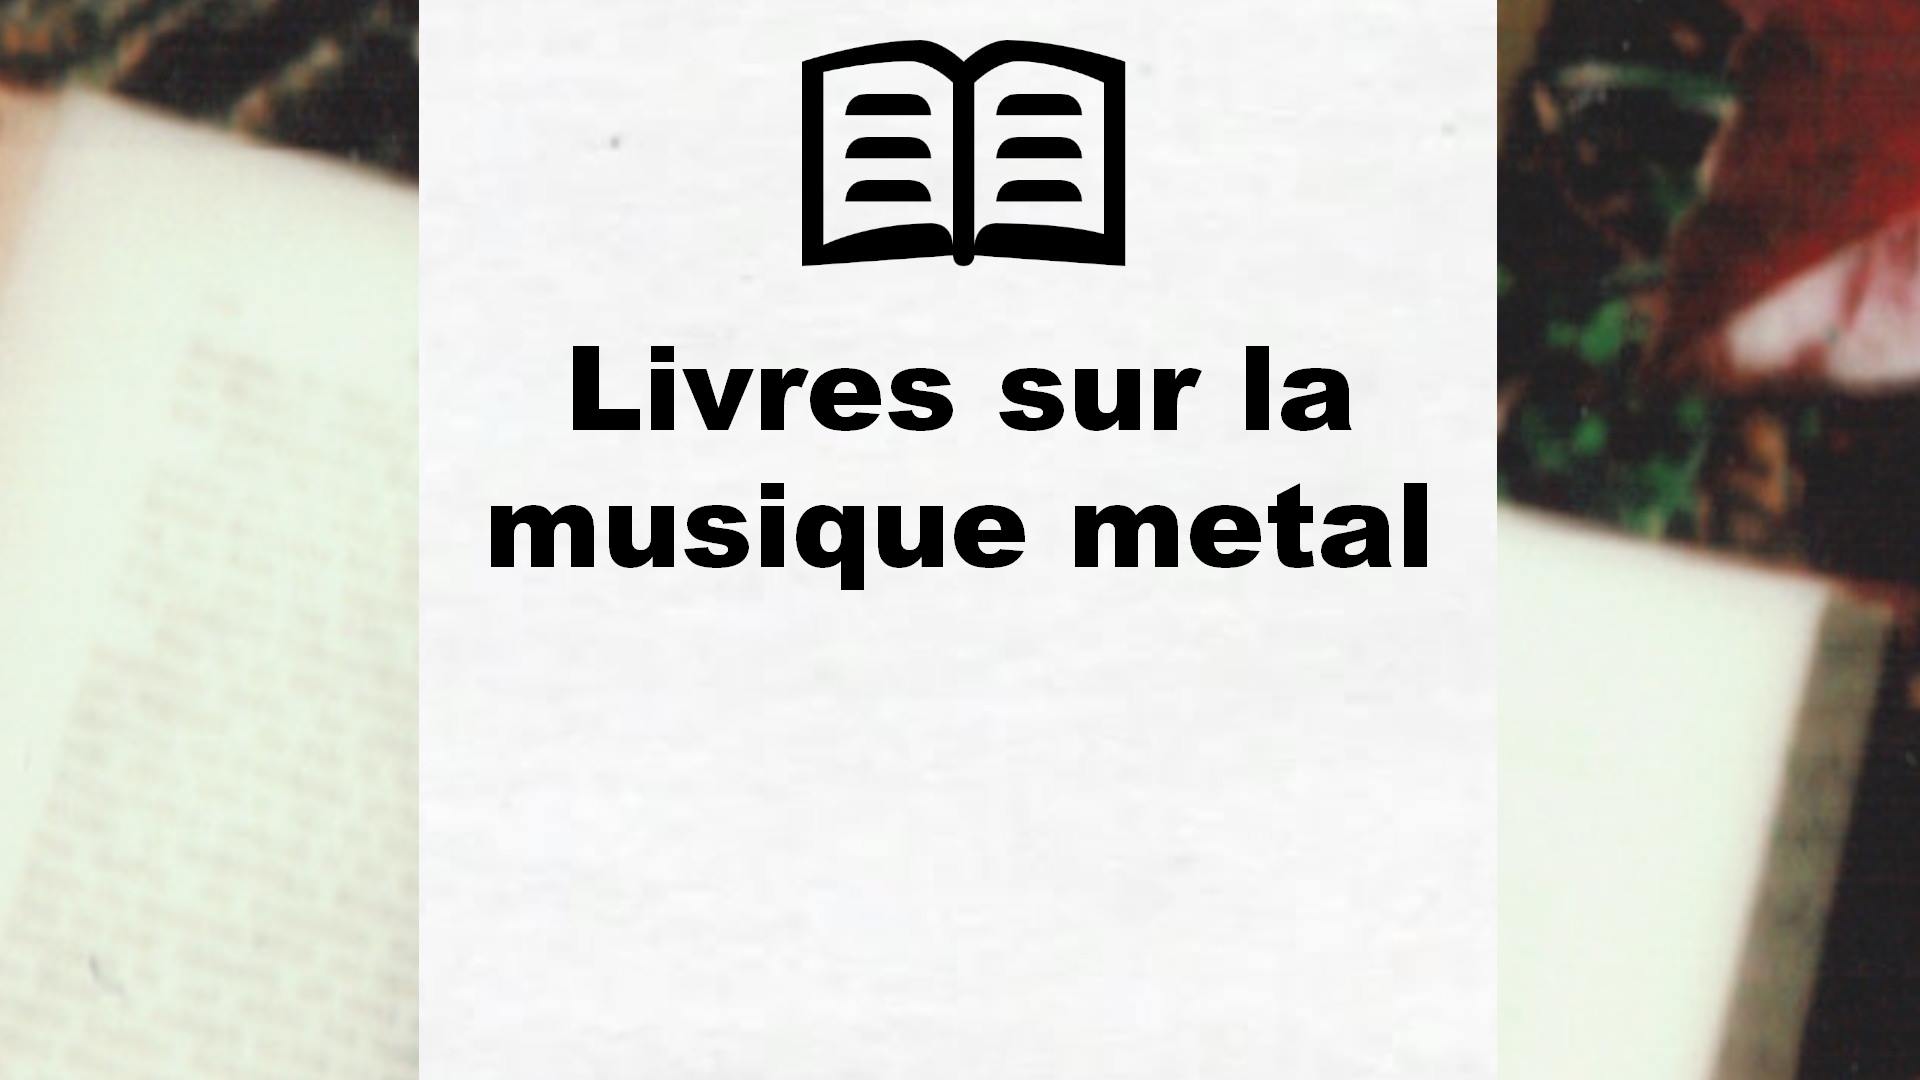 Livres sur la musique metal